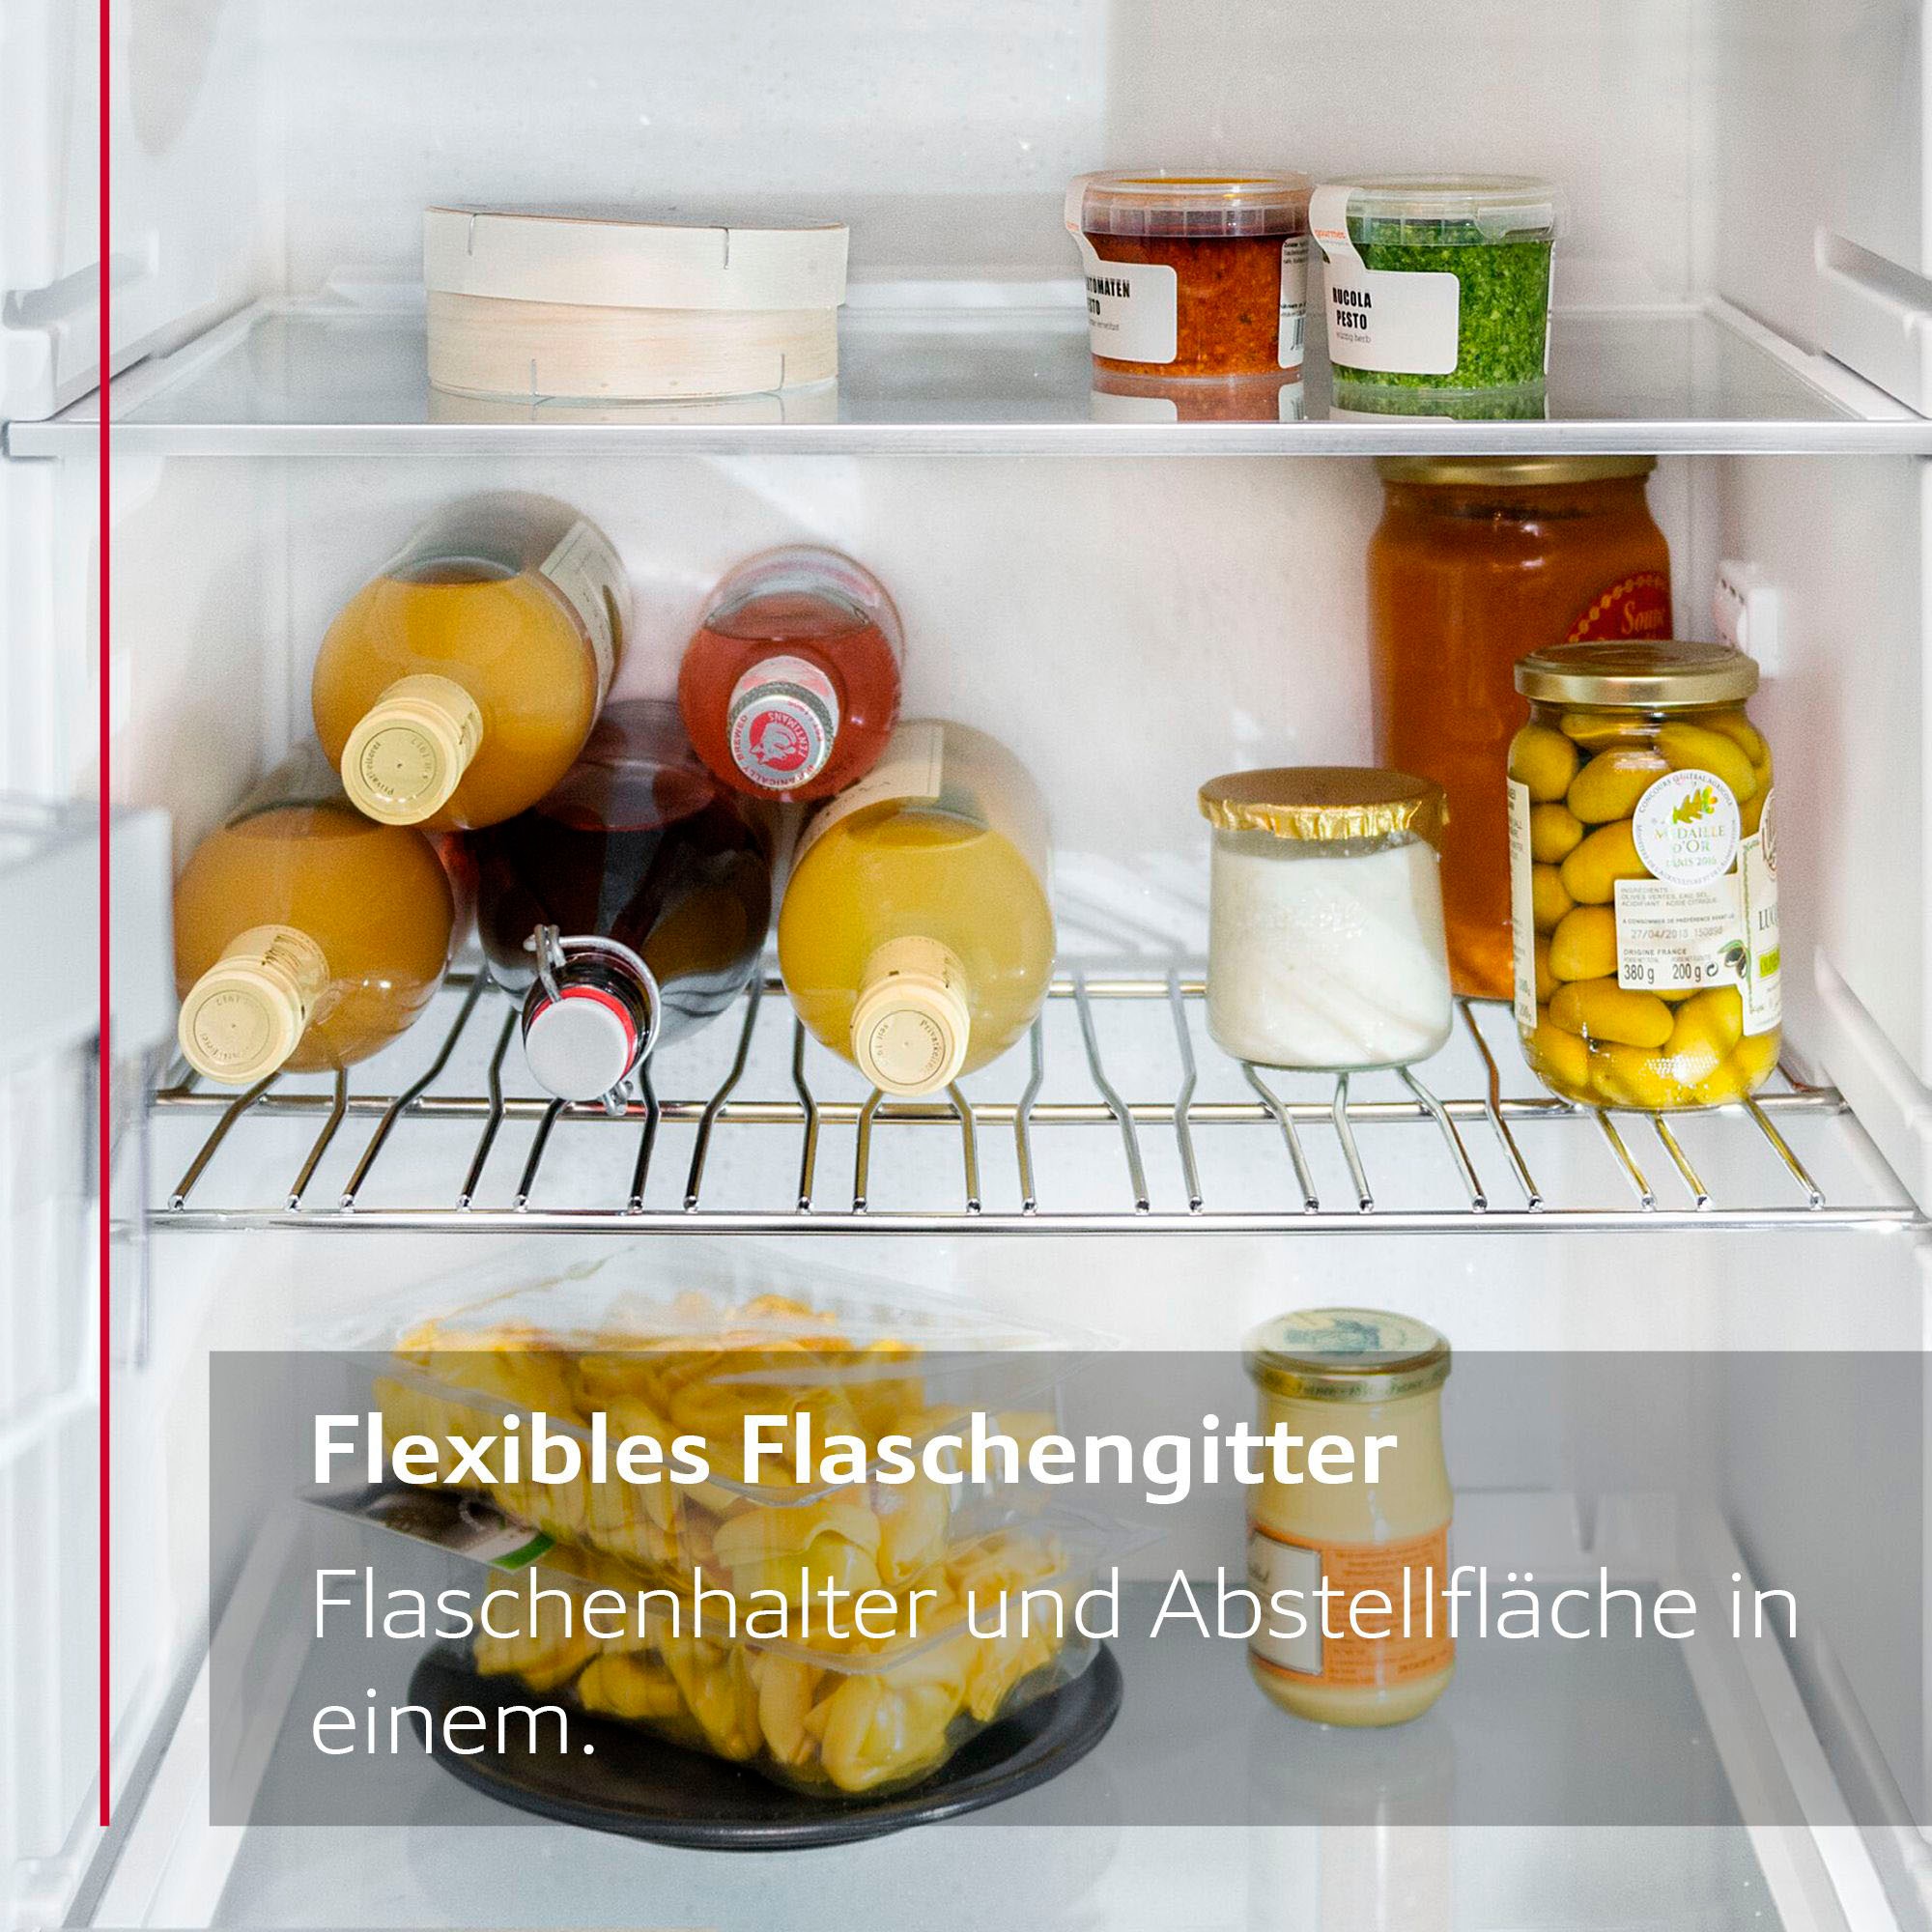 NEFF Einbaukühlschrank »KI2322FE0«, KI2322FE0, 102,1 cm hoch, 56 cm breit, Fresh Safe: Schublade für flexible Lagerung von Obst & Gemüse